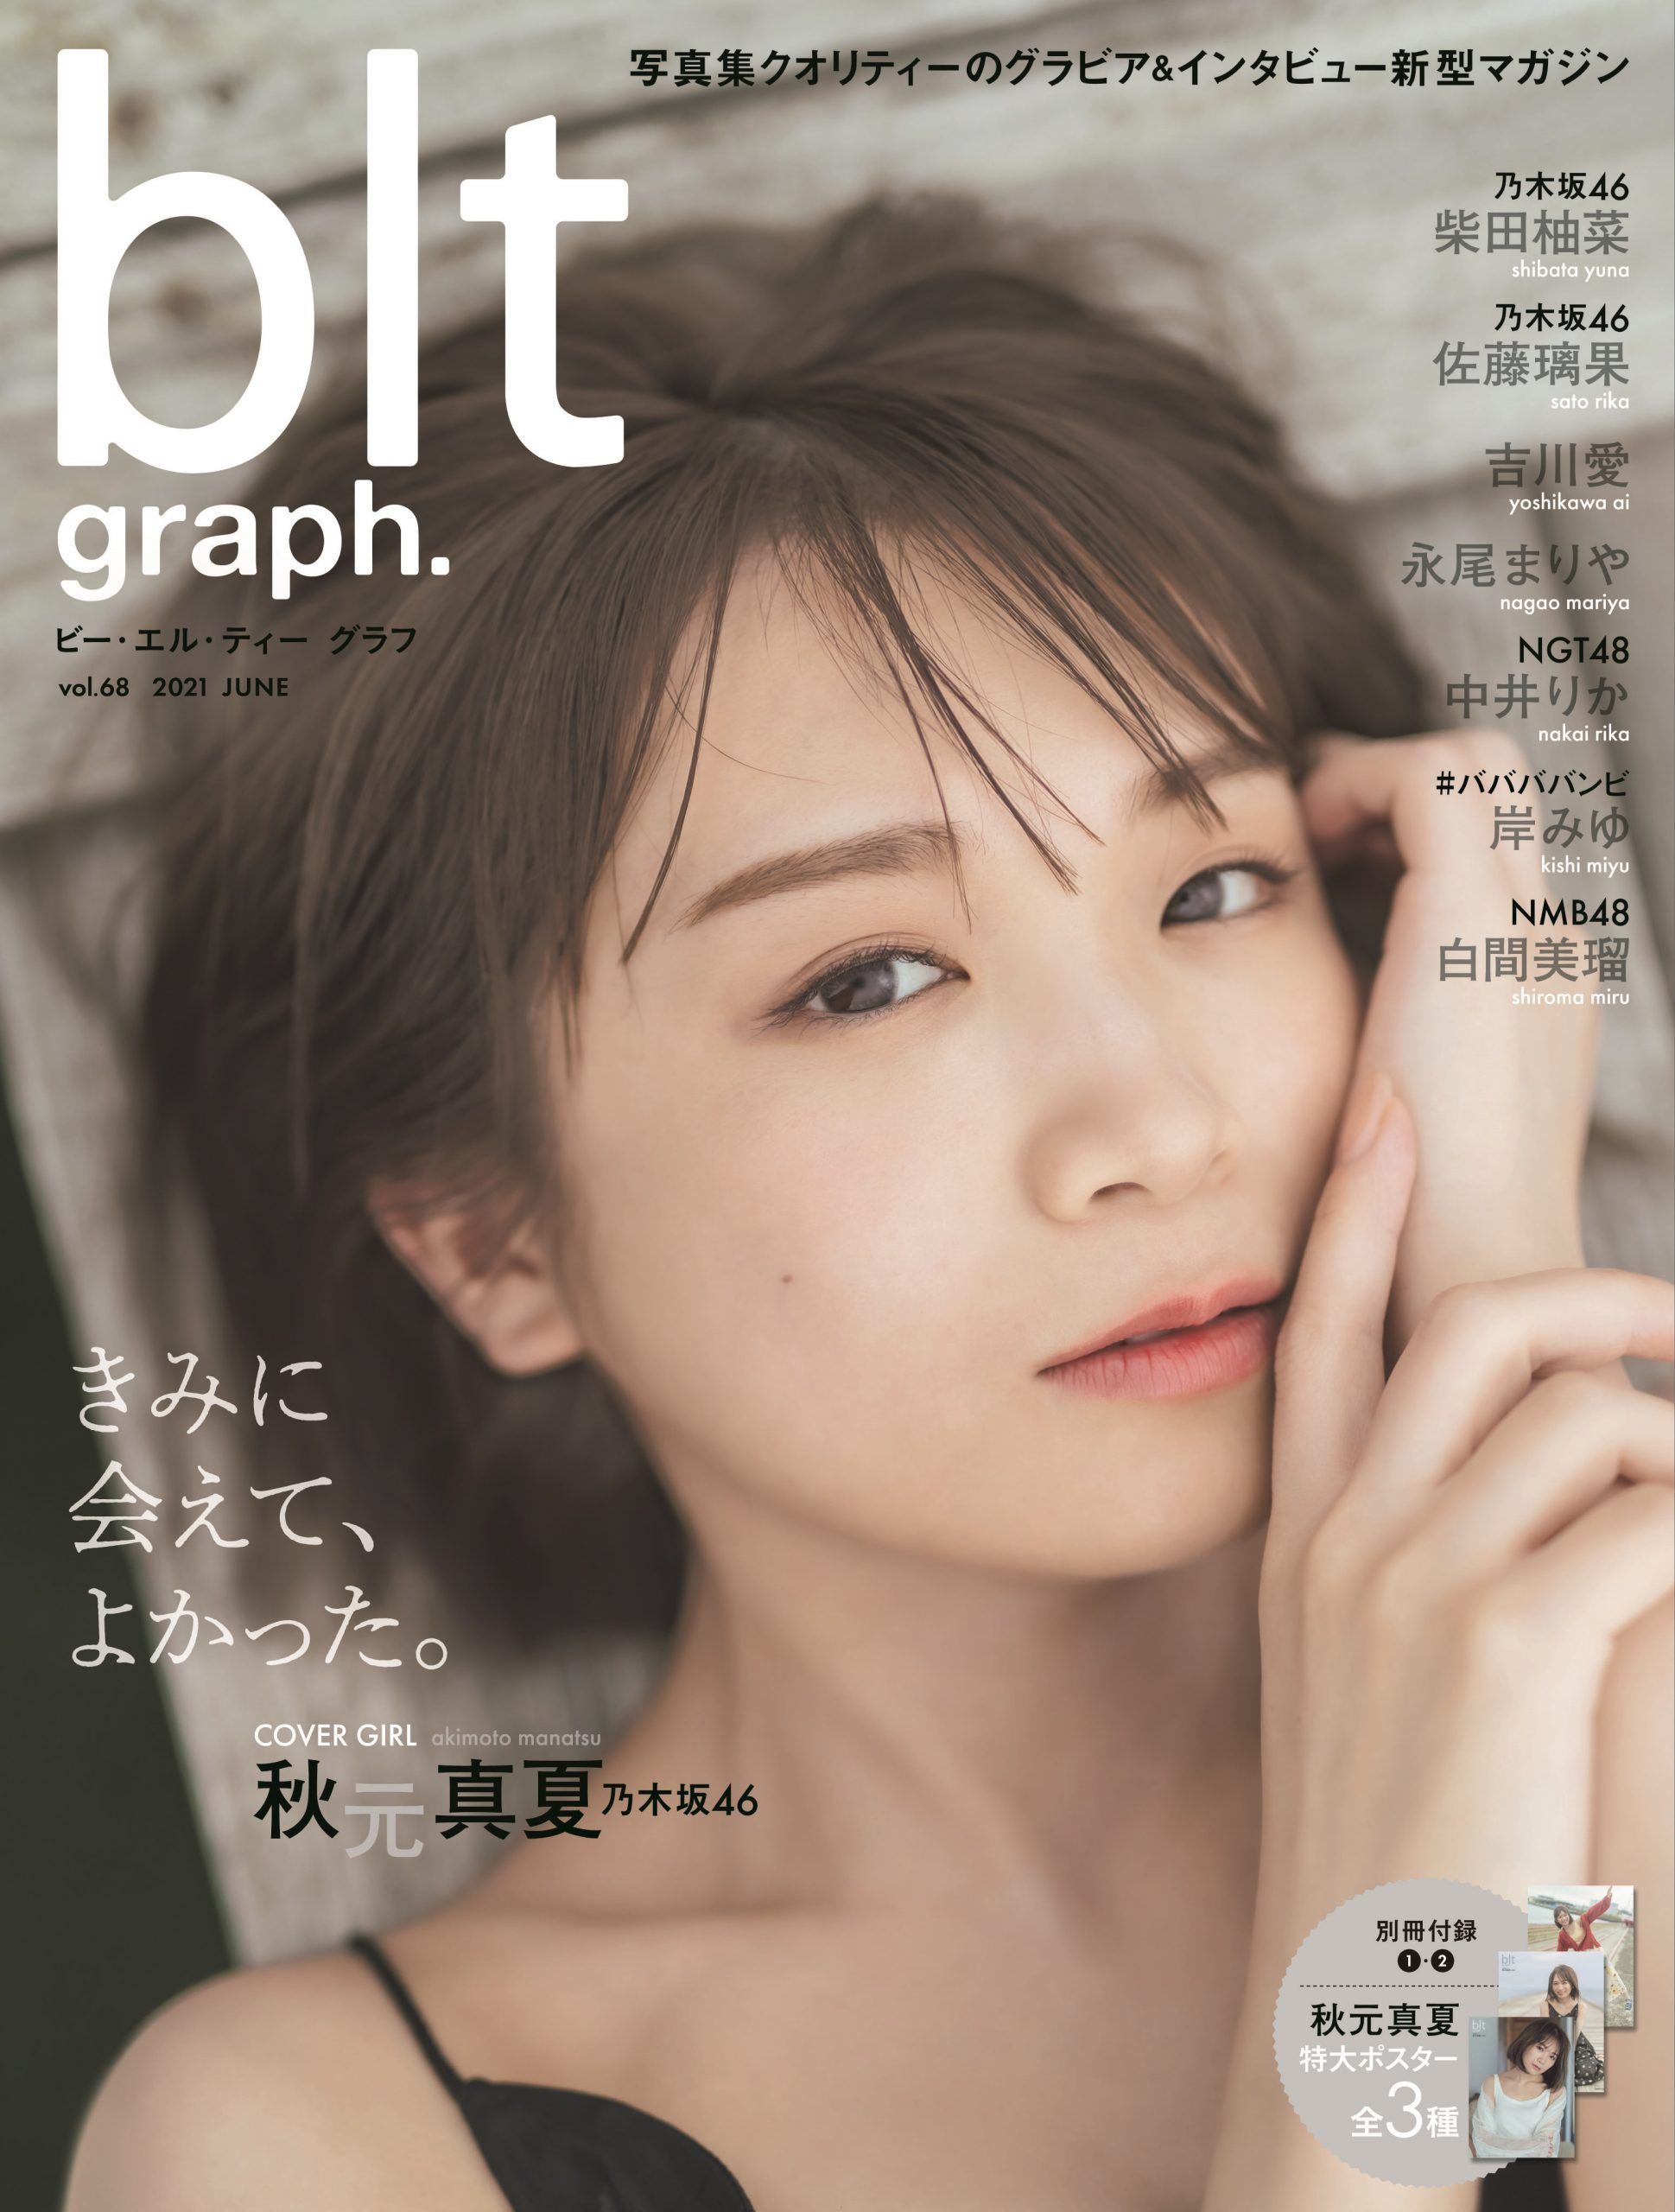 乃木坂46 秋元真夏登场『blt graph.vol.68』封面照曝光